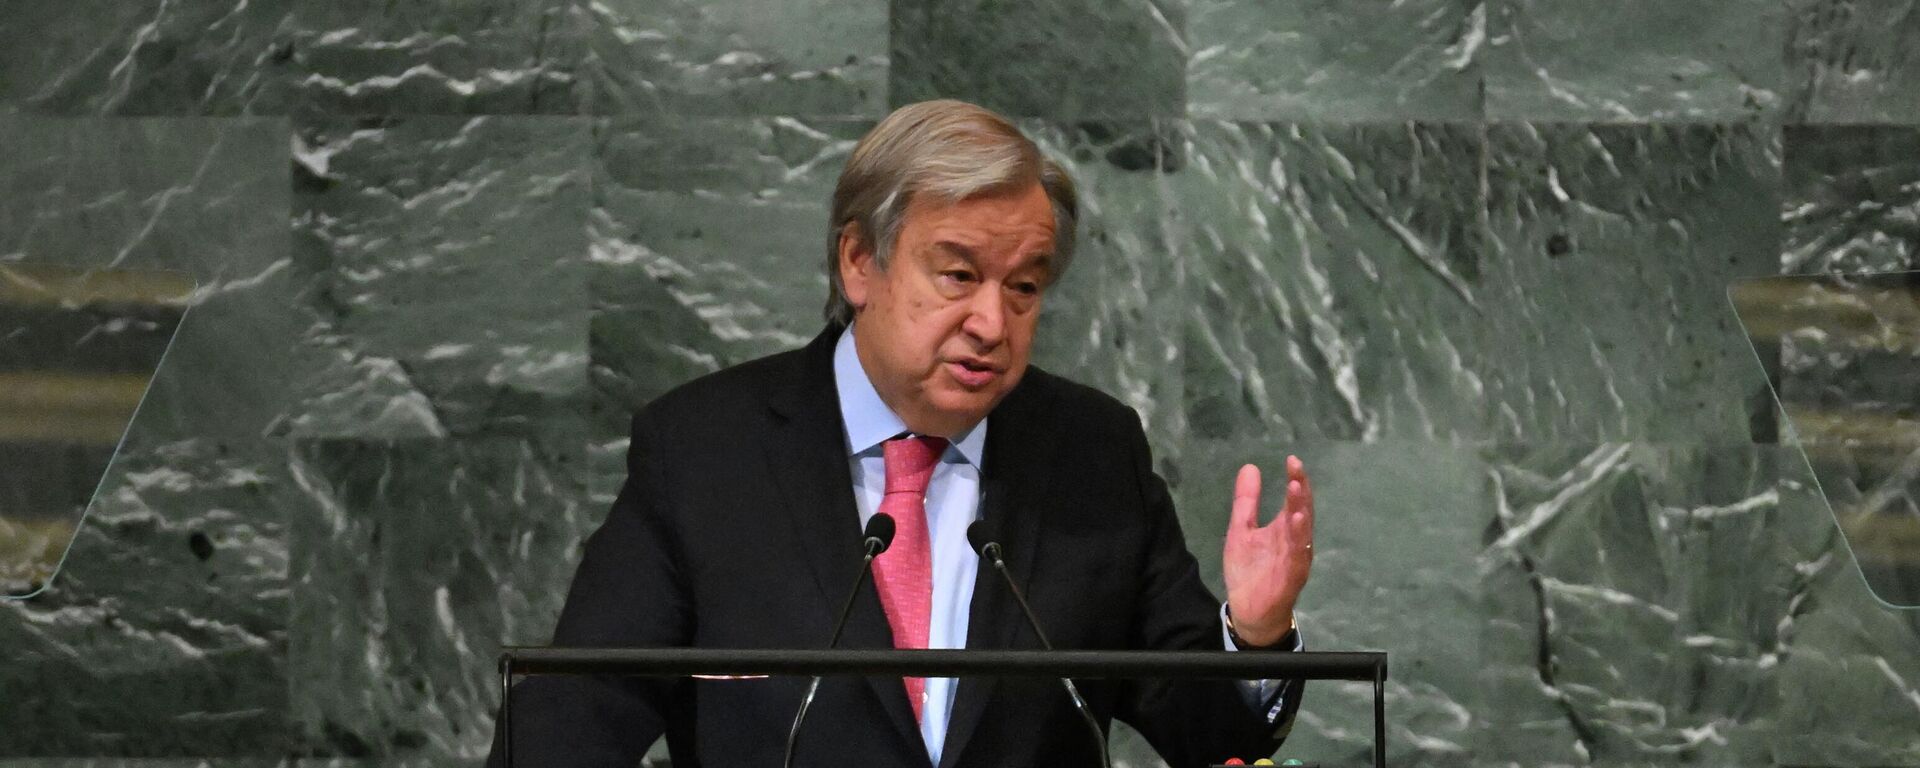 Tổng thư ký LHQ António Guterres phát biểu tại phiên họp thứ 77 của Đại hội đồng LHQ tại Trụ sở LHQ ở New York - Sputnik Việt Nam, 1920, 22.09.2022